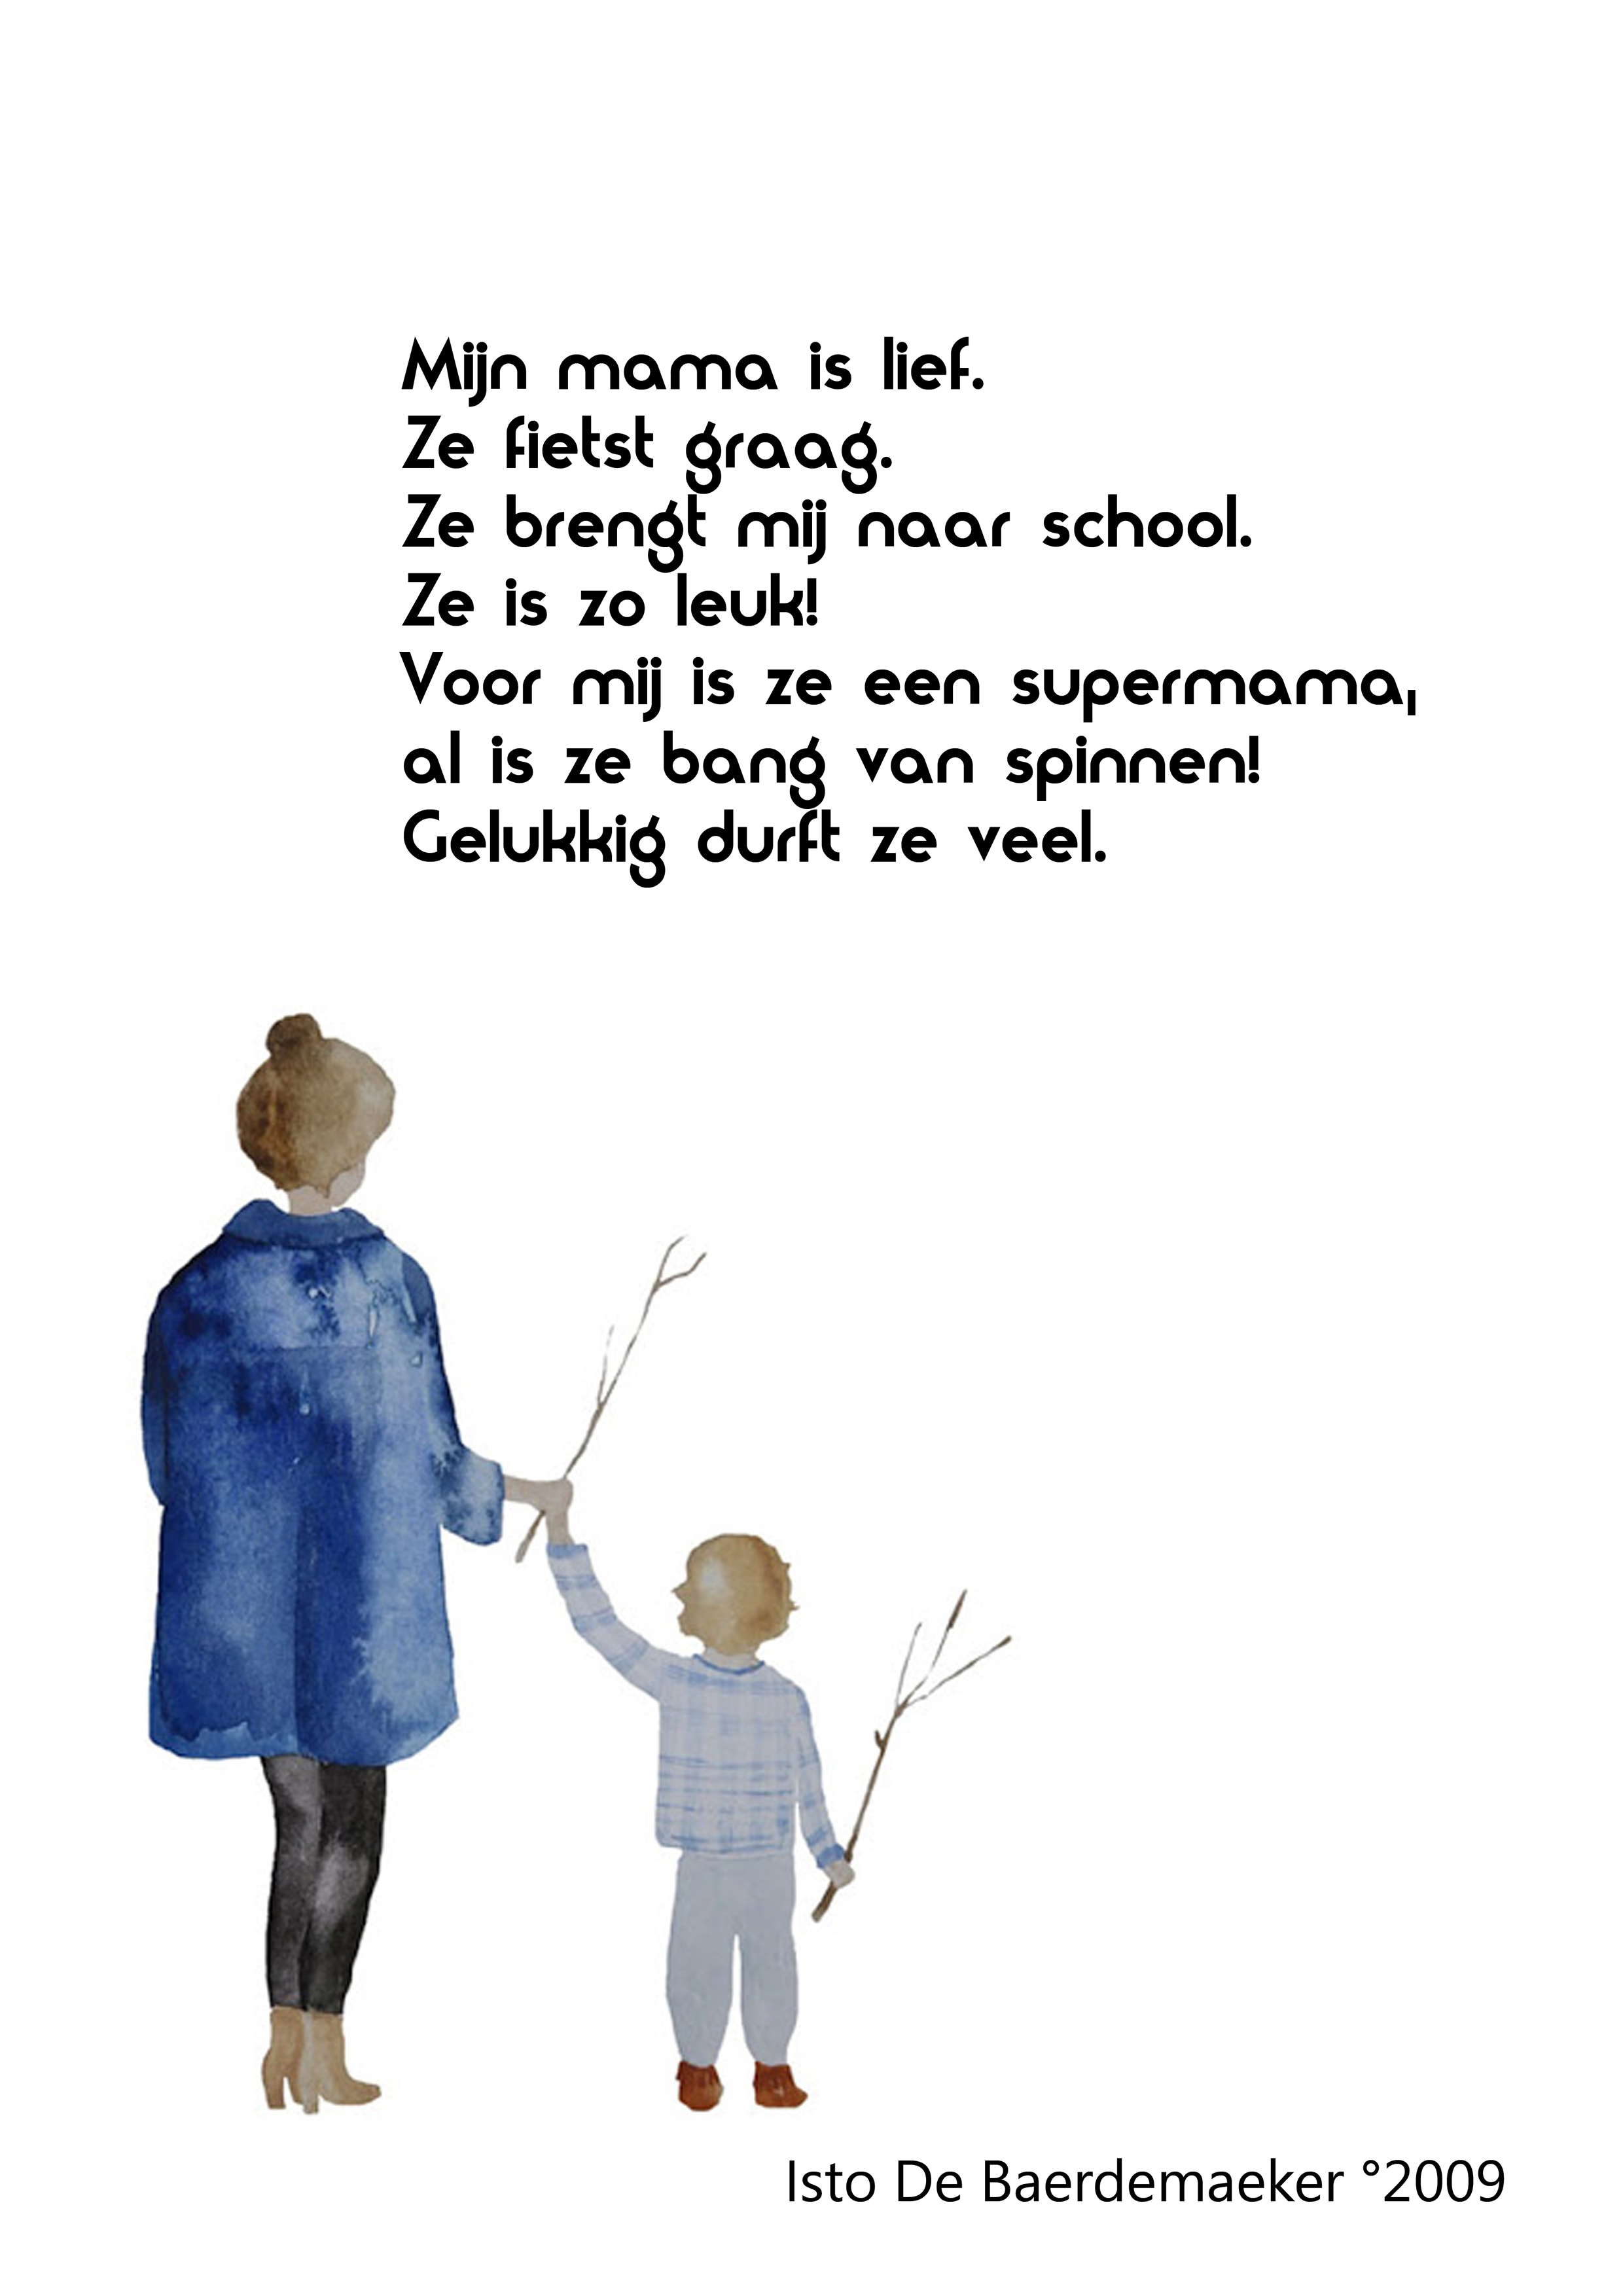 Isto De Baerdemaeker